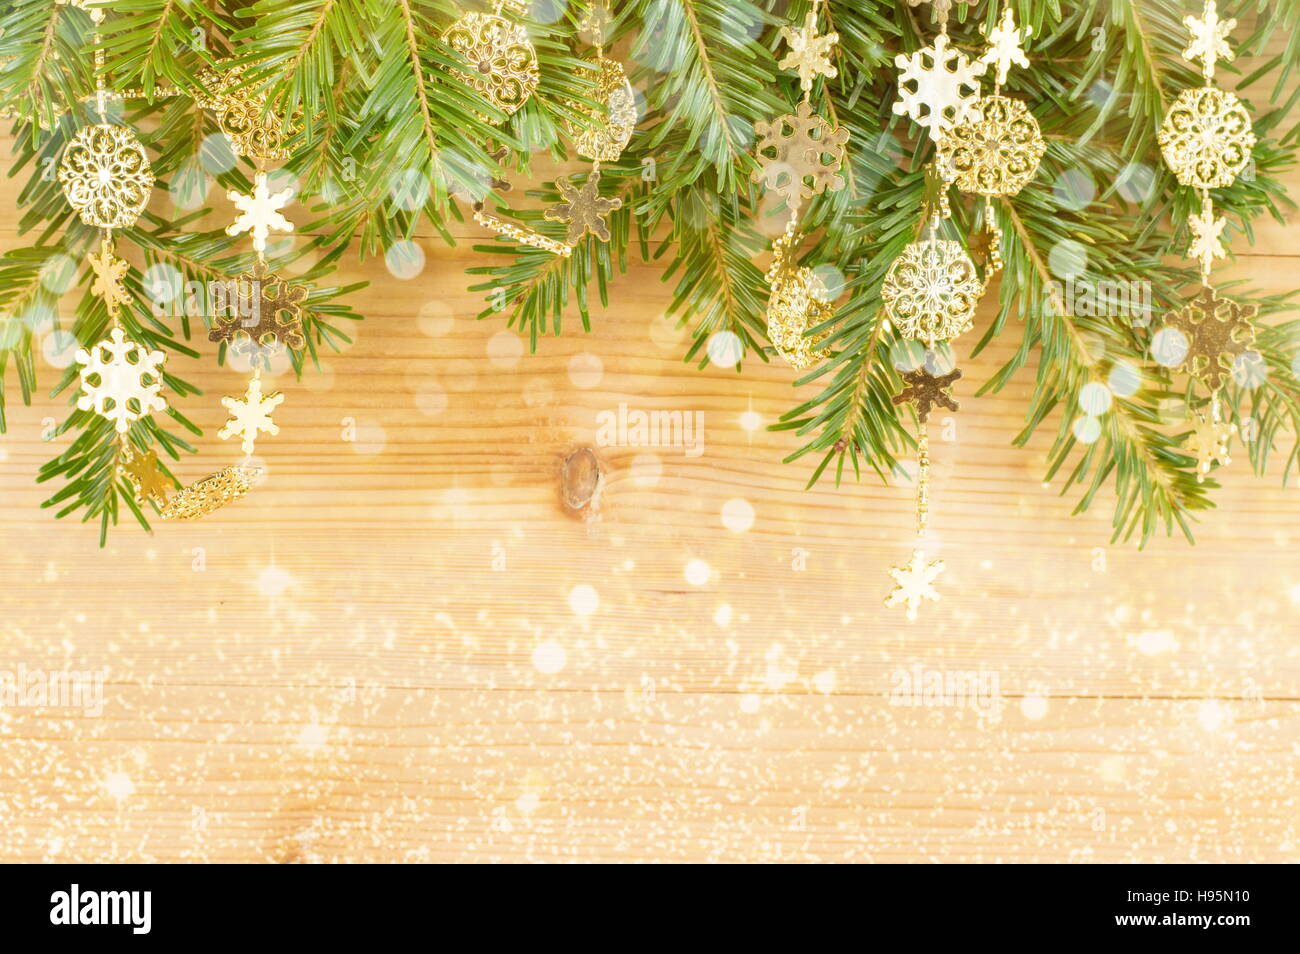 Festliche Weihnachtsdekoration und Tanne an der Wand hängen Stockfoto